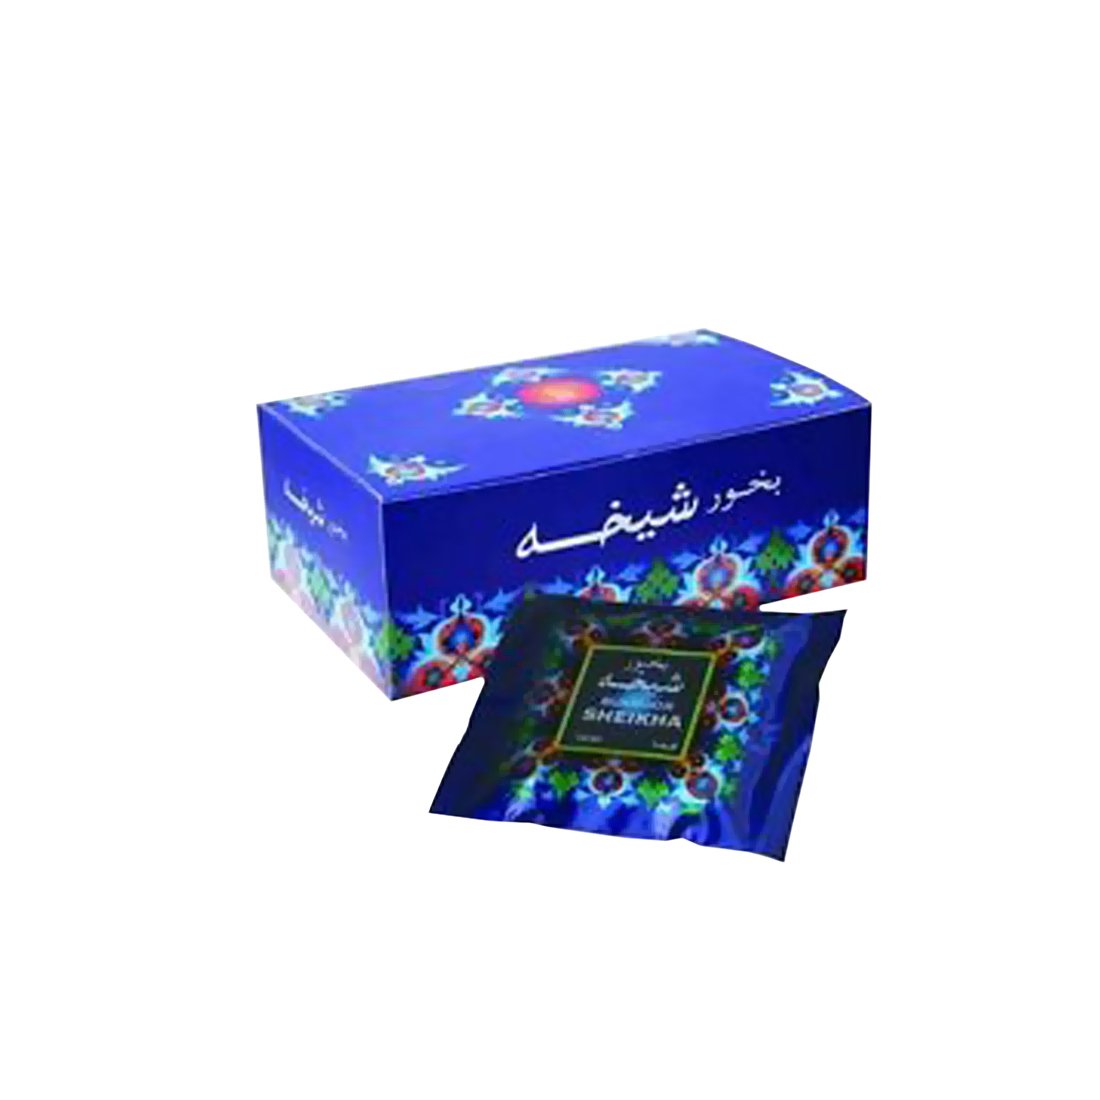 Al Haramain Bukhoor Sheikha Bakhoor Burners Fragrance Paste Pack of 12